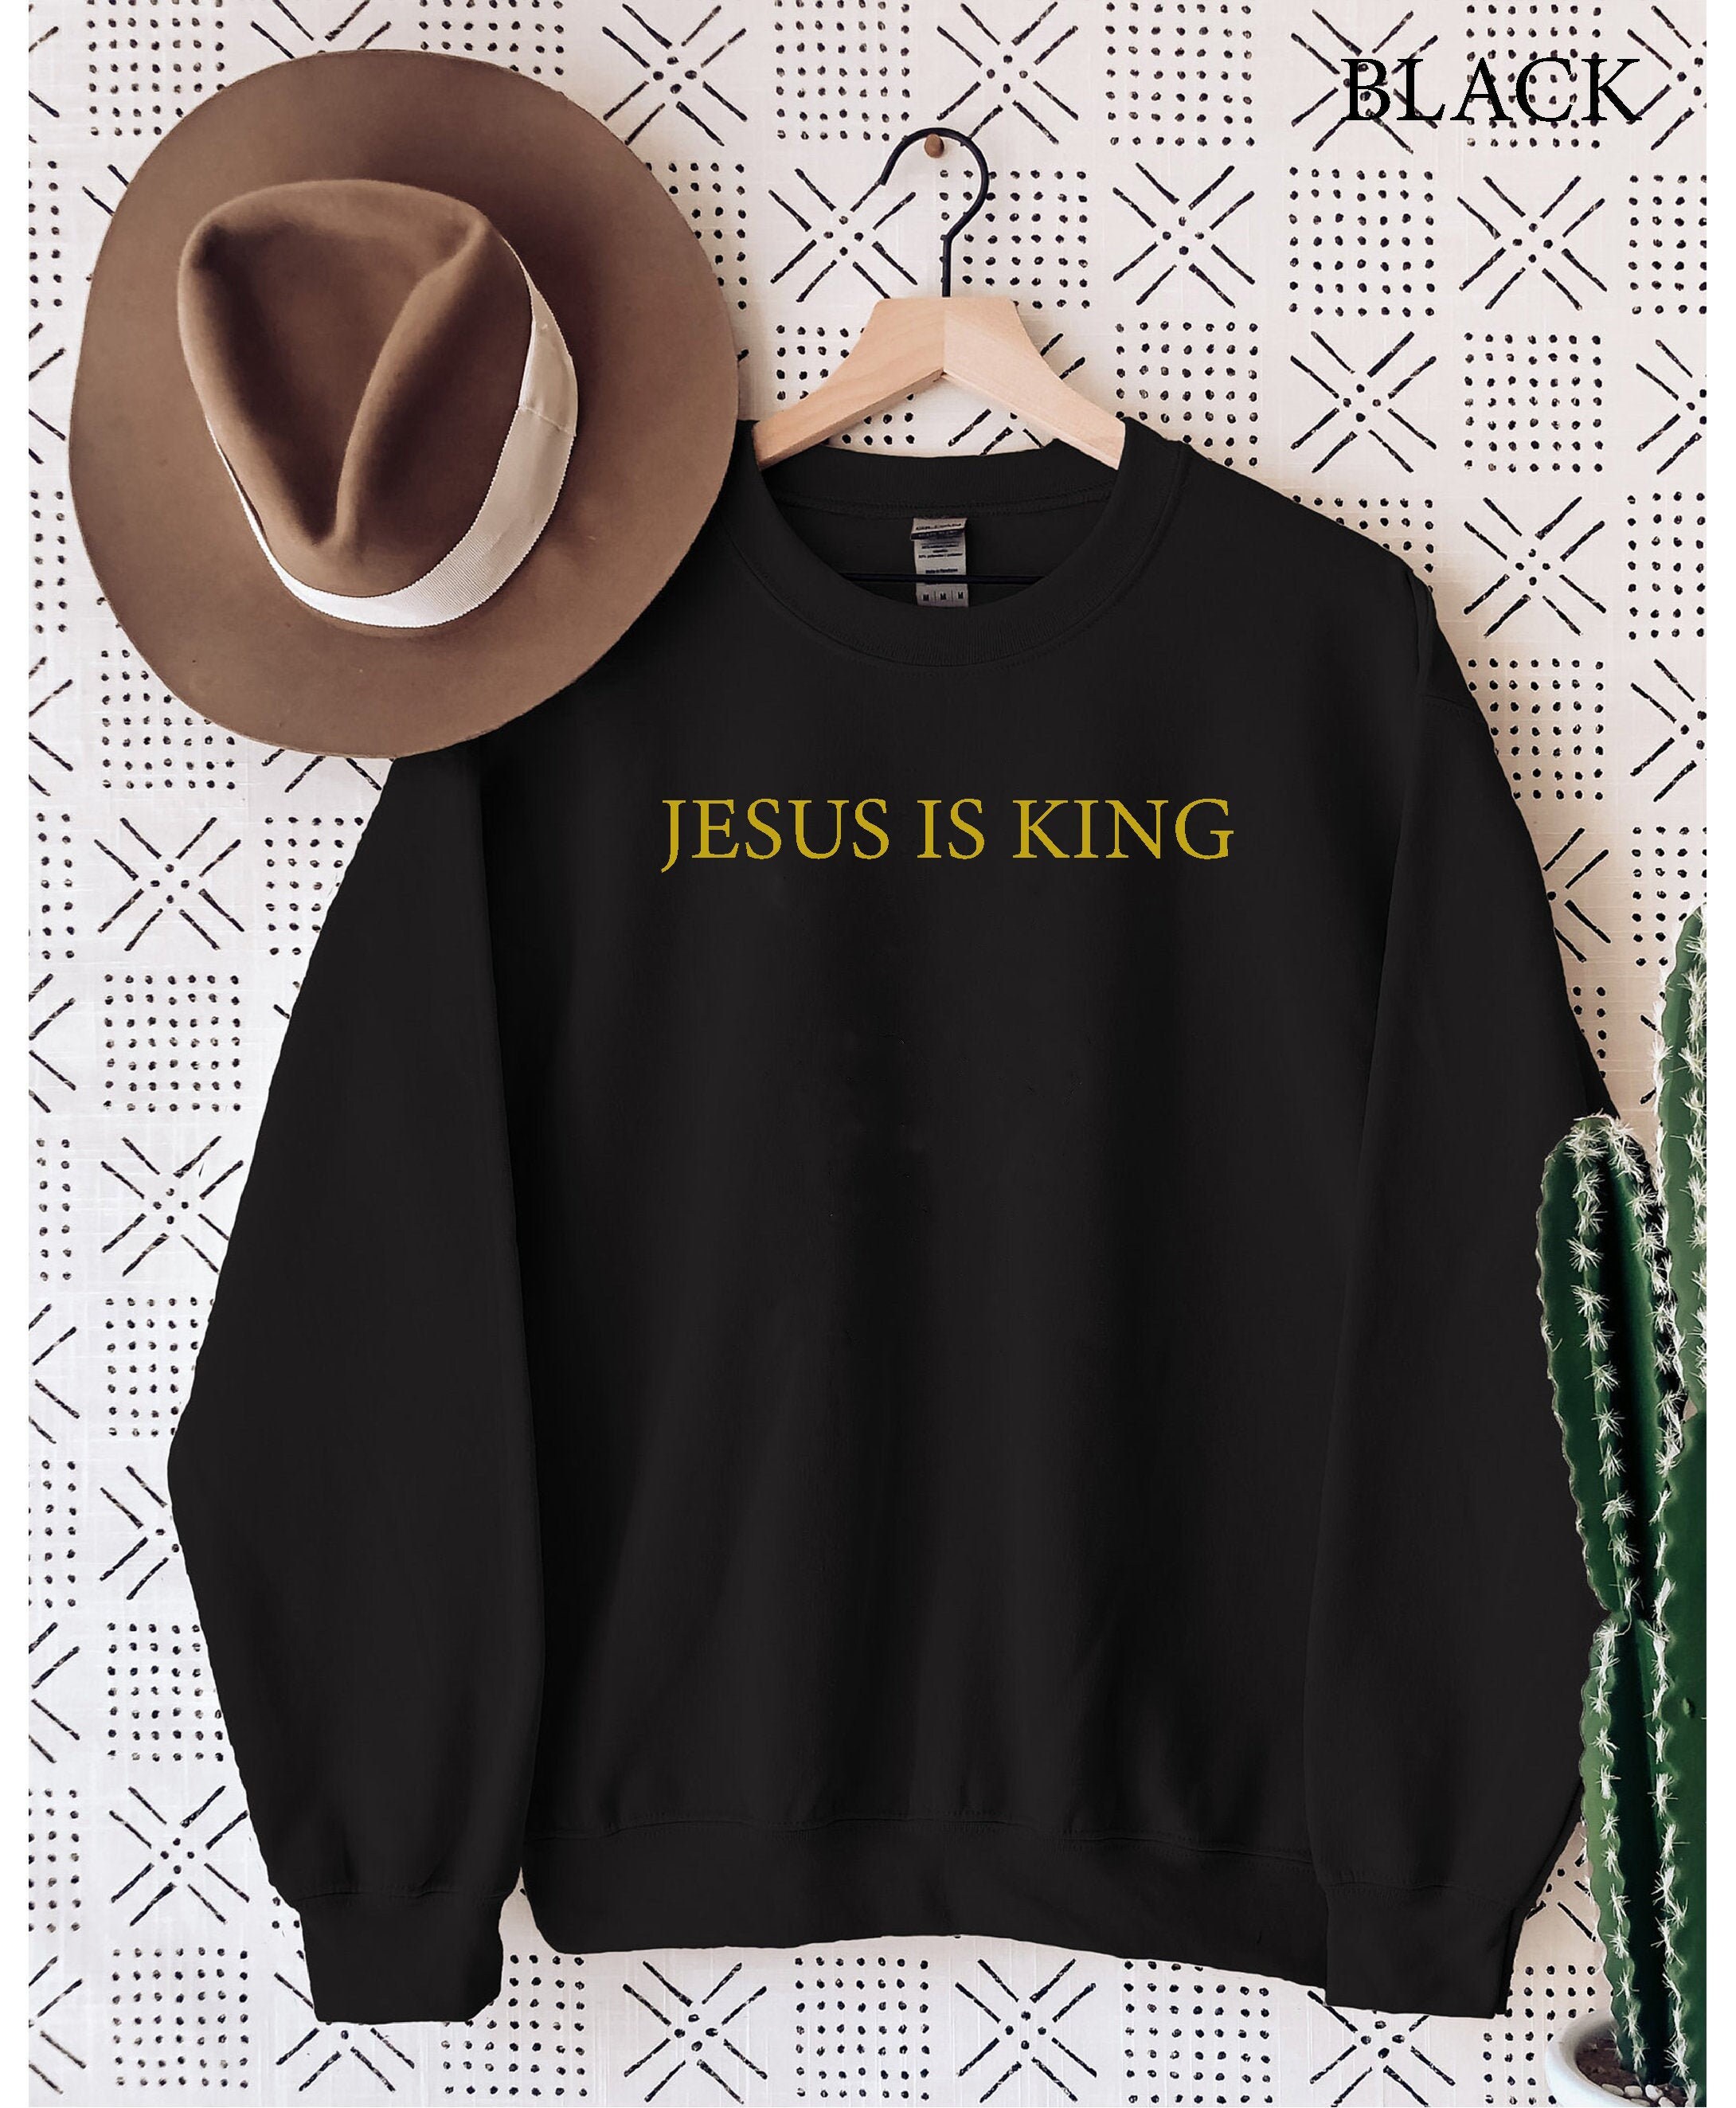 Kanye West Jesus is King Sweatshirt Unisex Mens Womens USA | Etsy